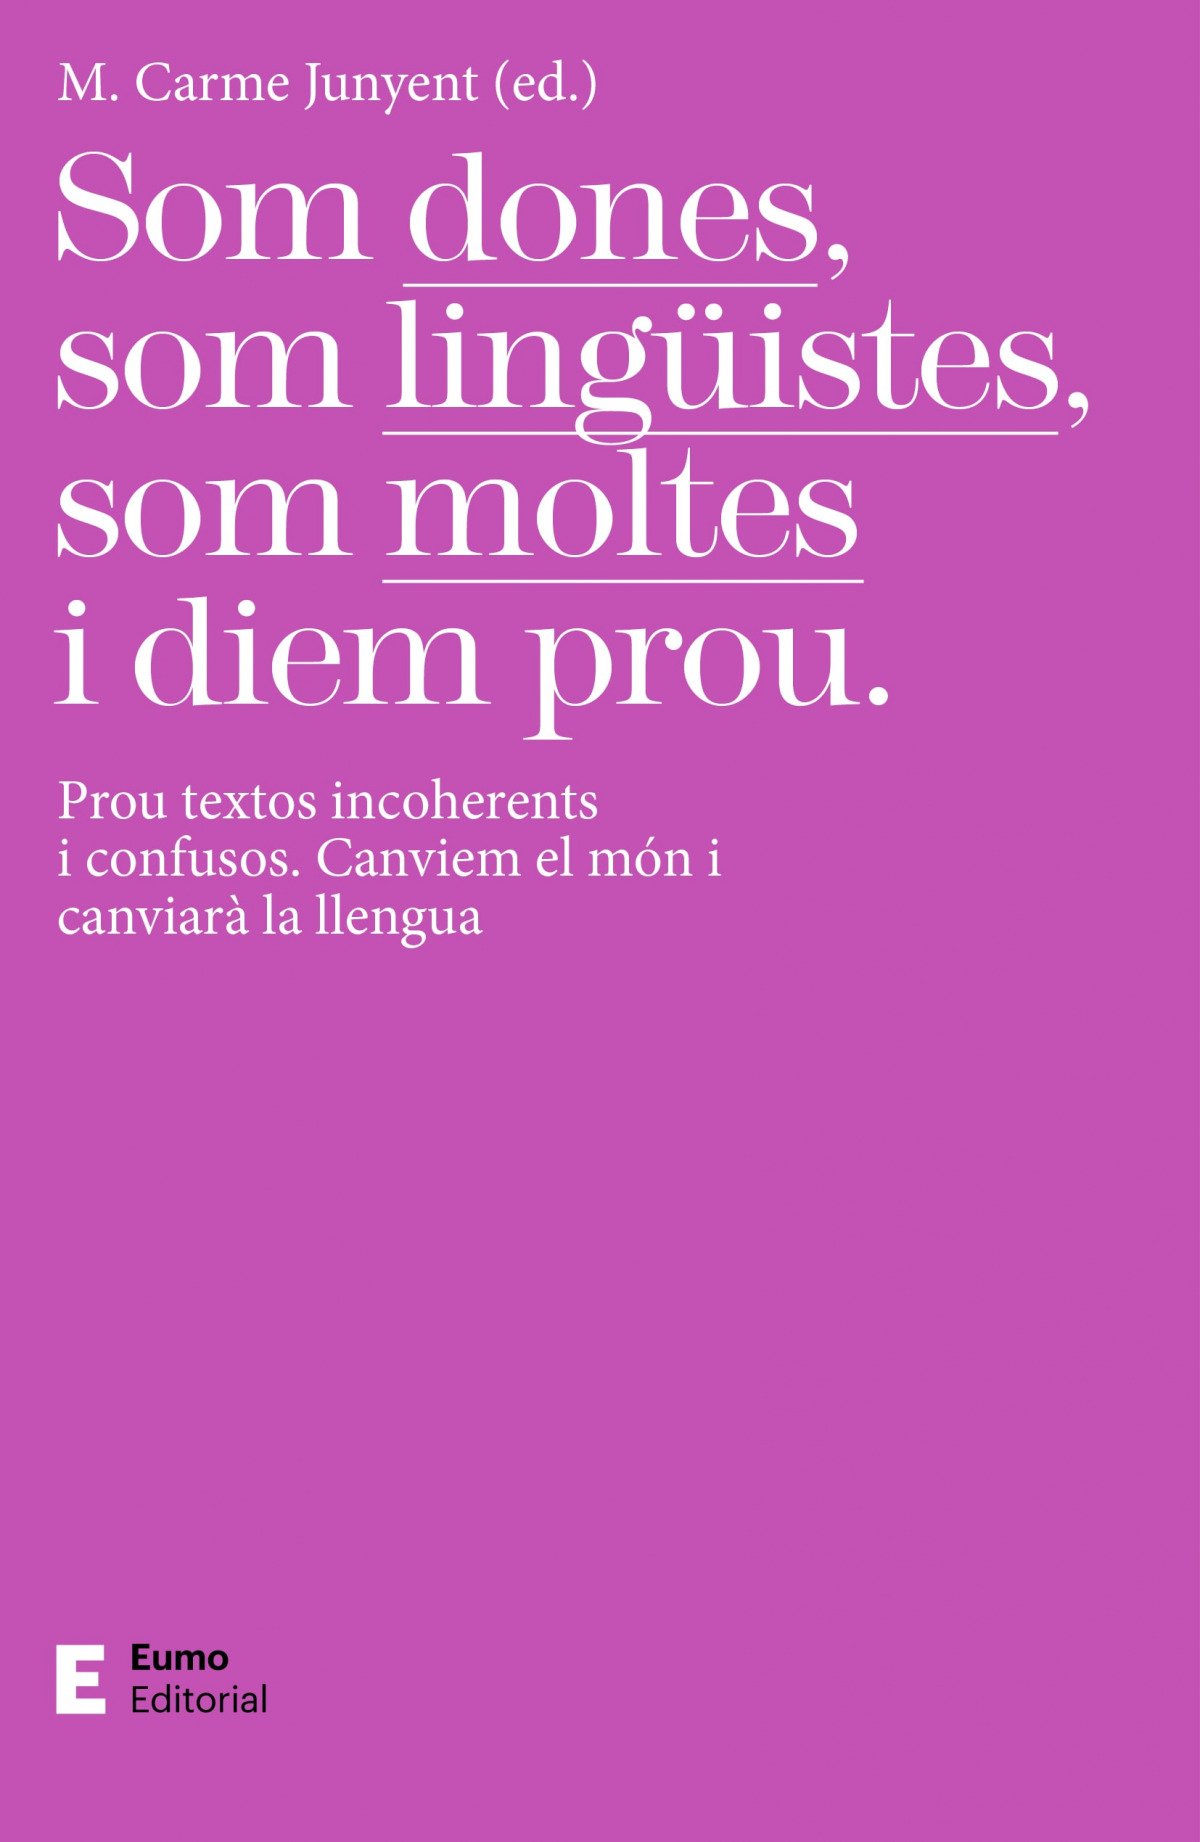 Som dones, som lingüistes, som moltes i diem prou.